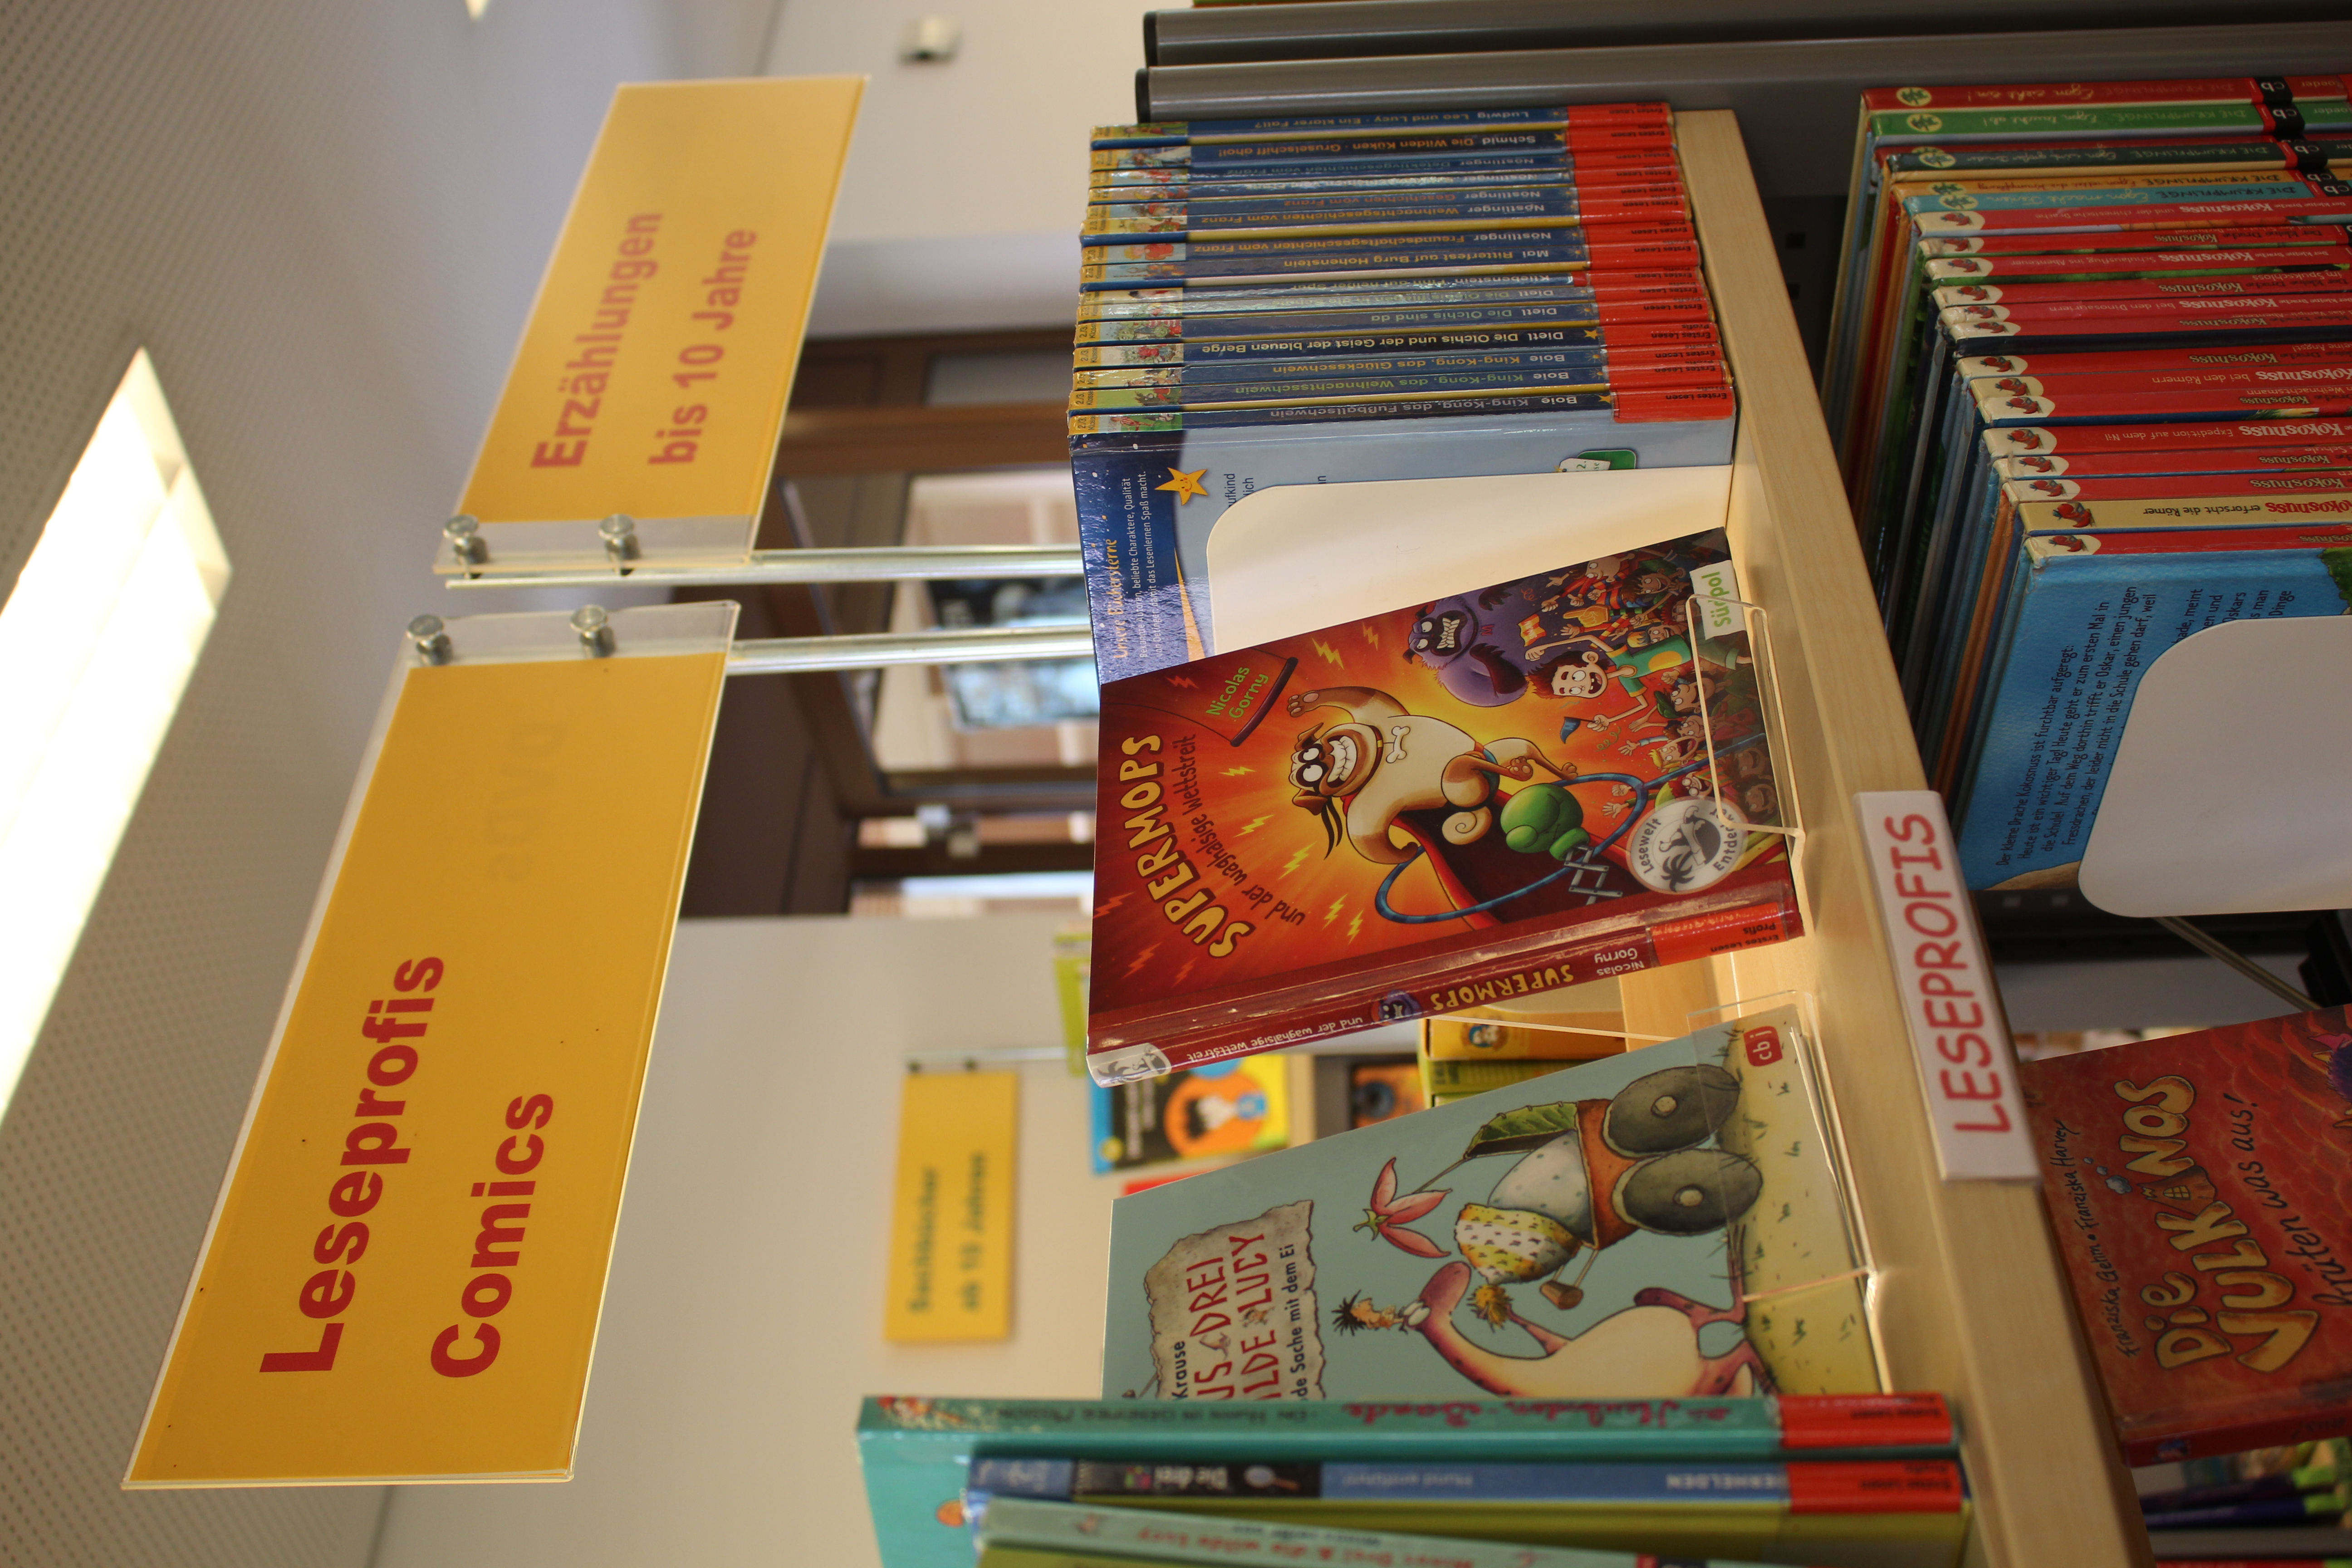  Bücherregal mit Kinderbüchern, darüber ein Schild mit den Schlagwörtern Leseprofis und Comics. 